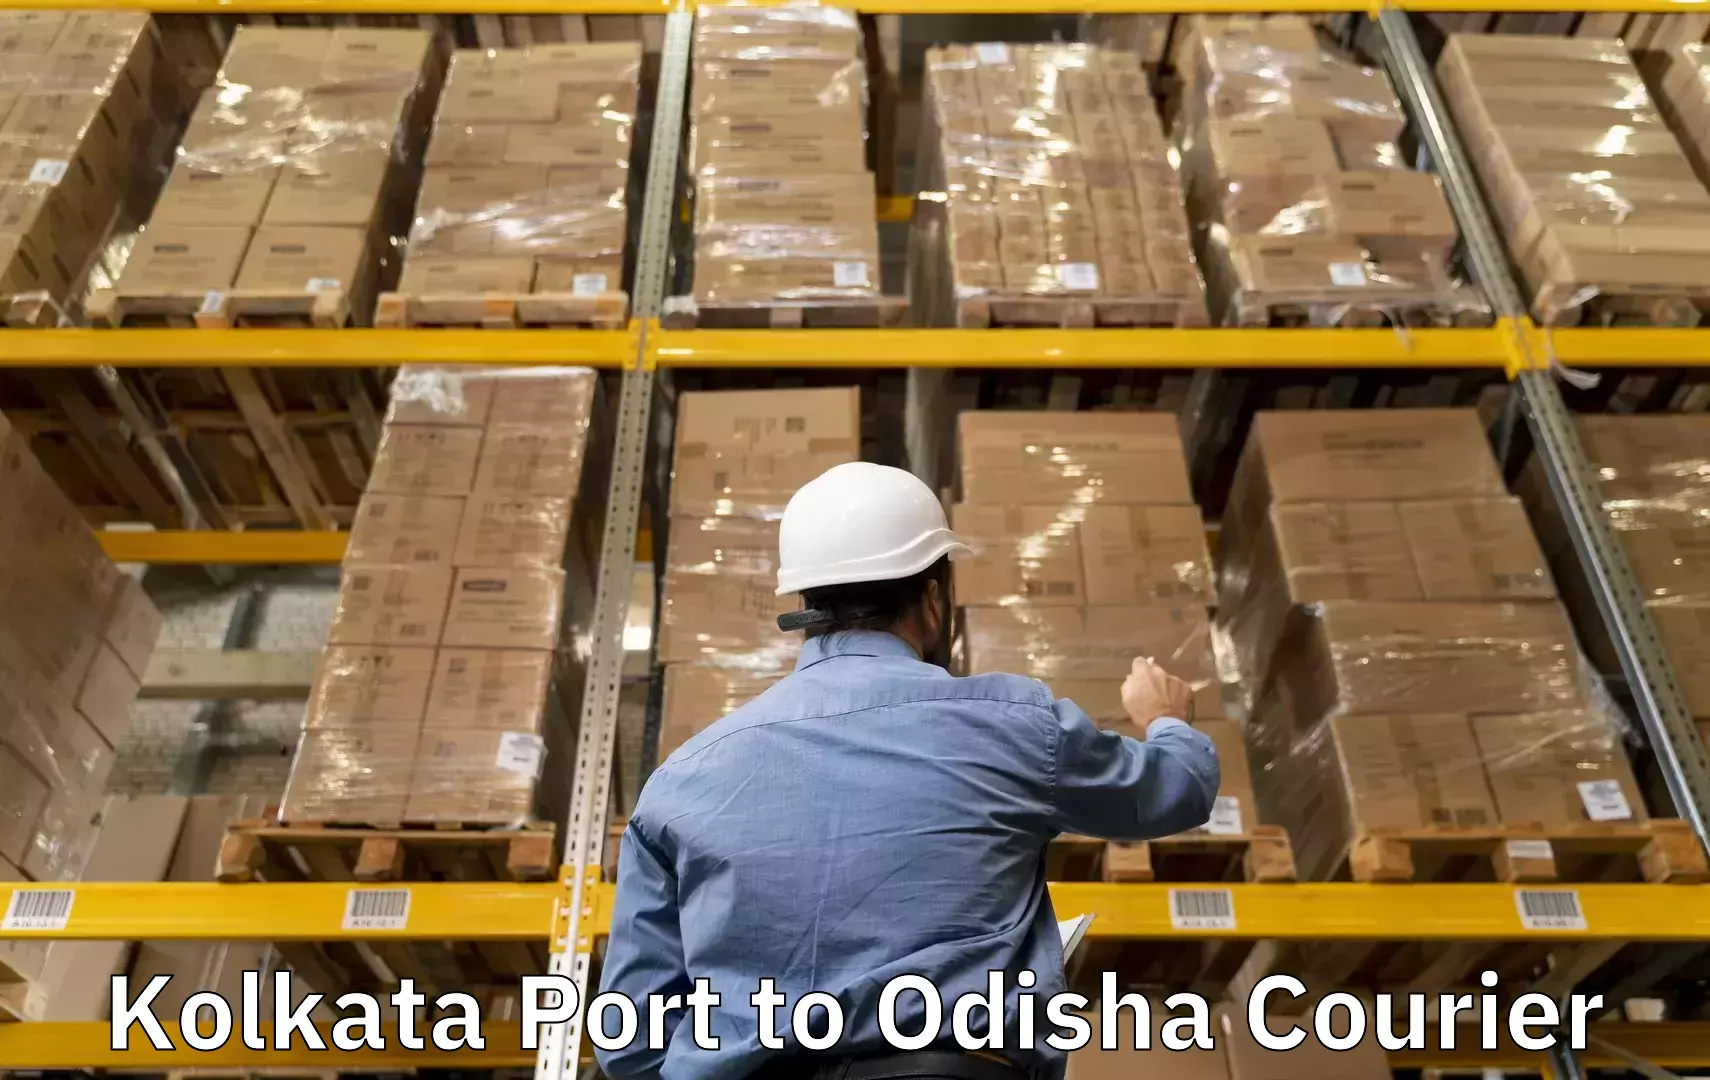 Customized luggage delivery Kolkata Port to Udala